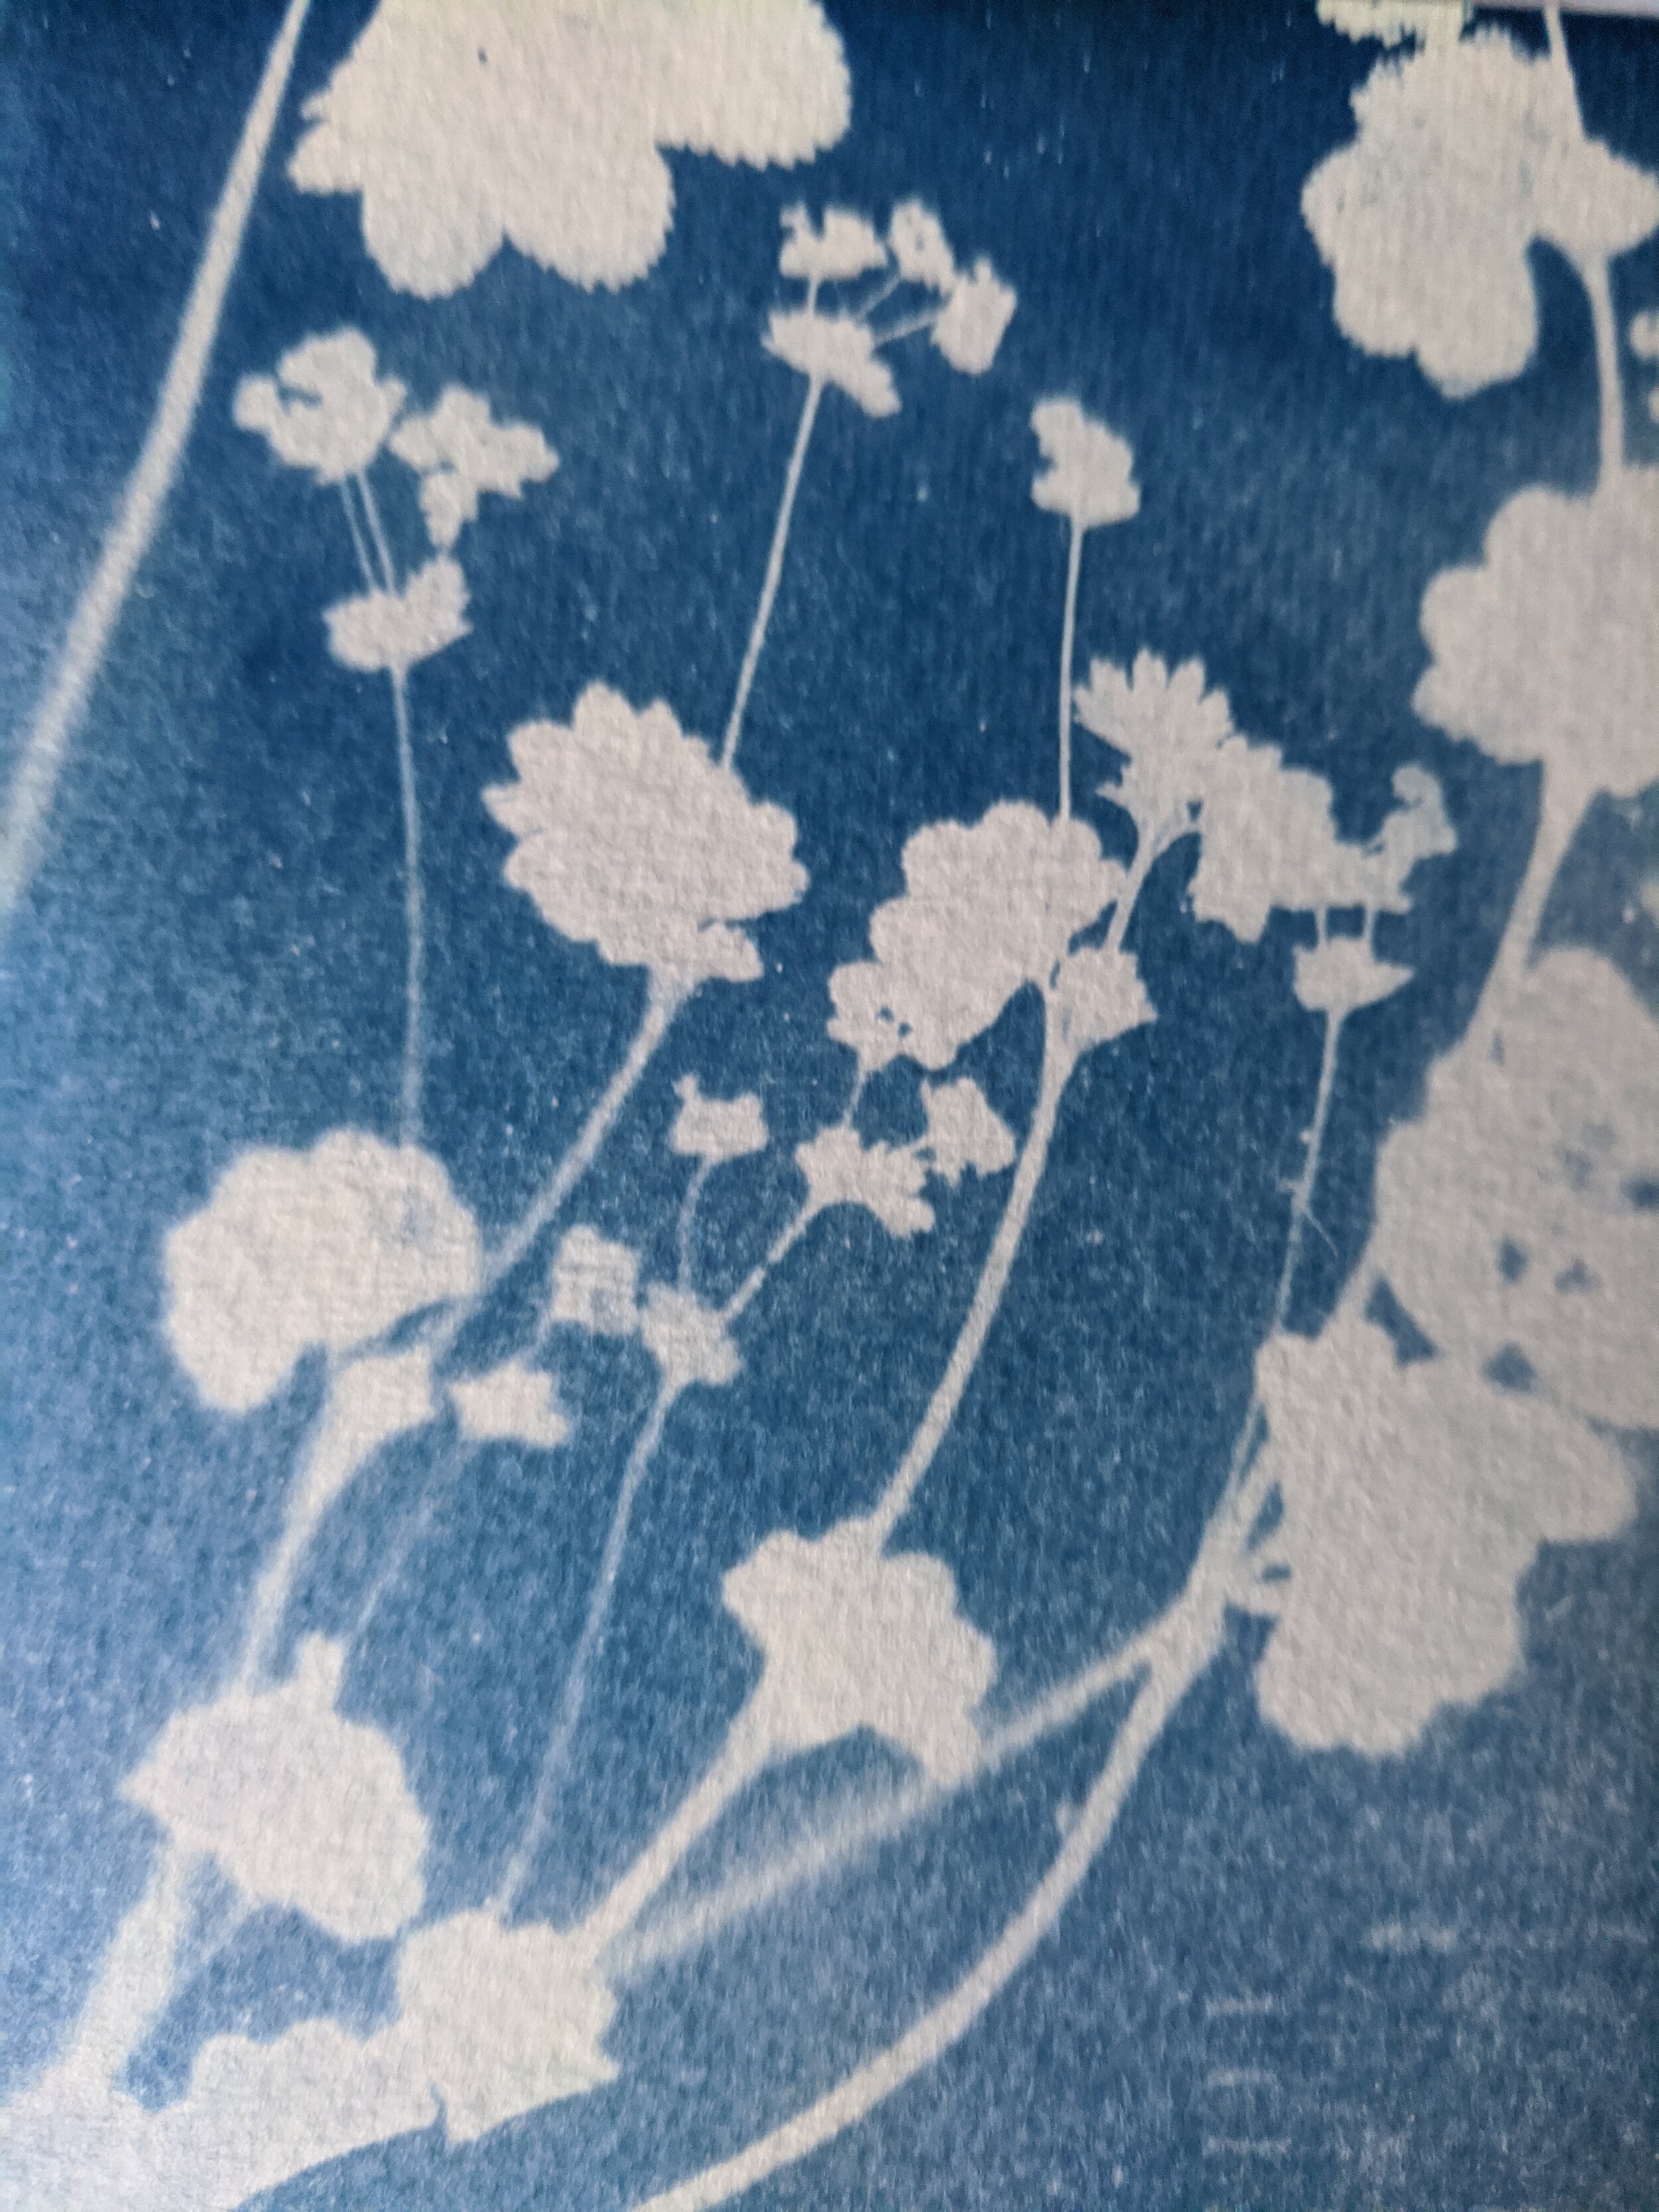 flowers cyanotype